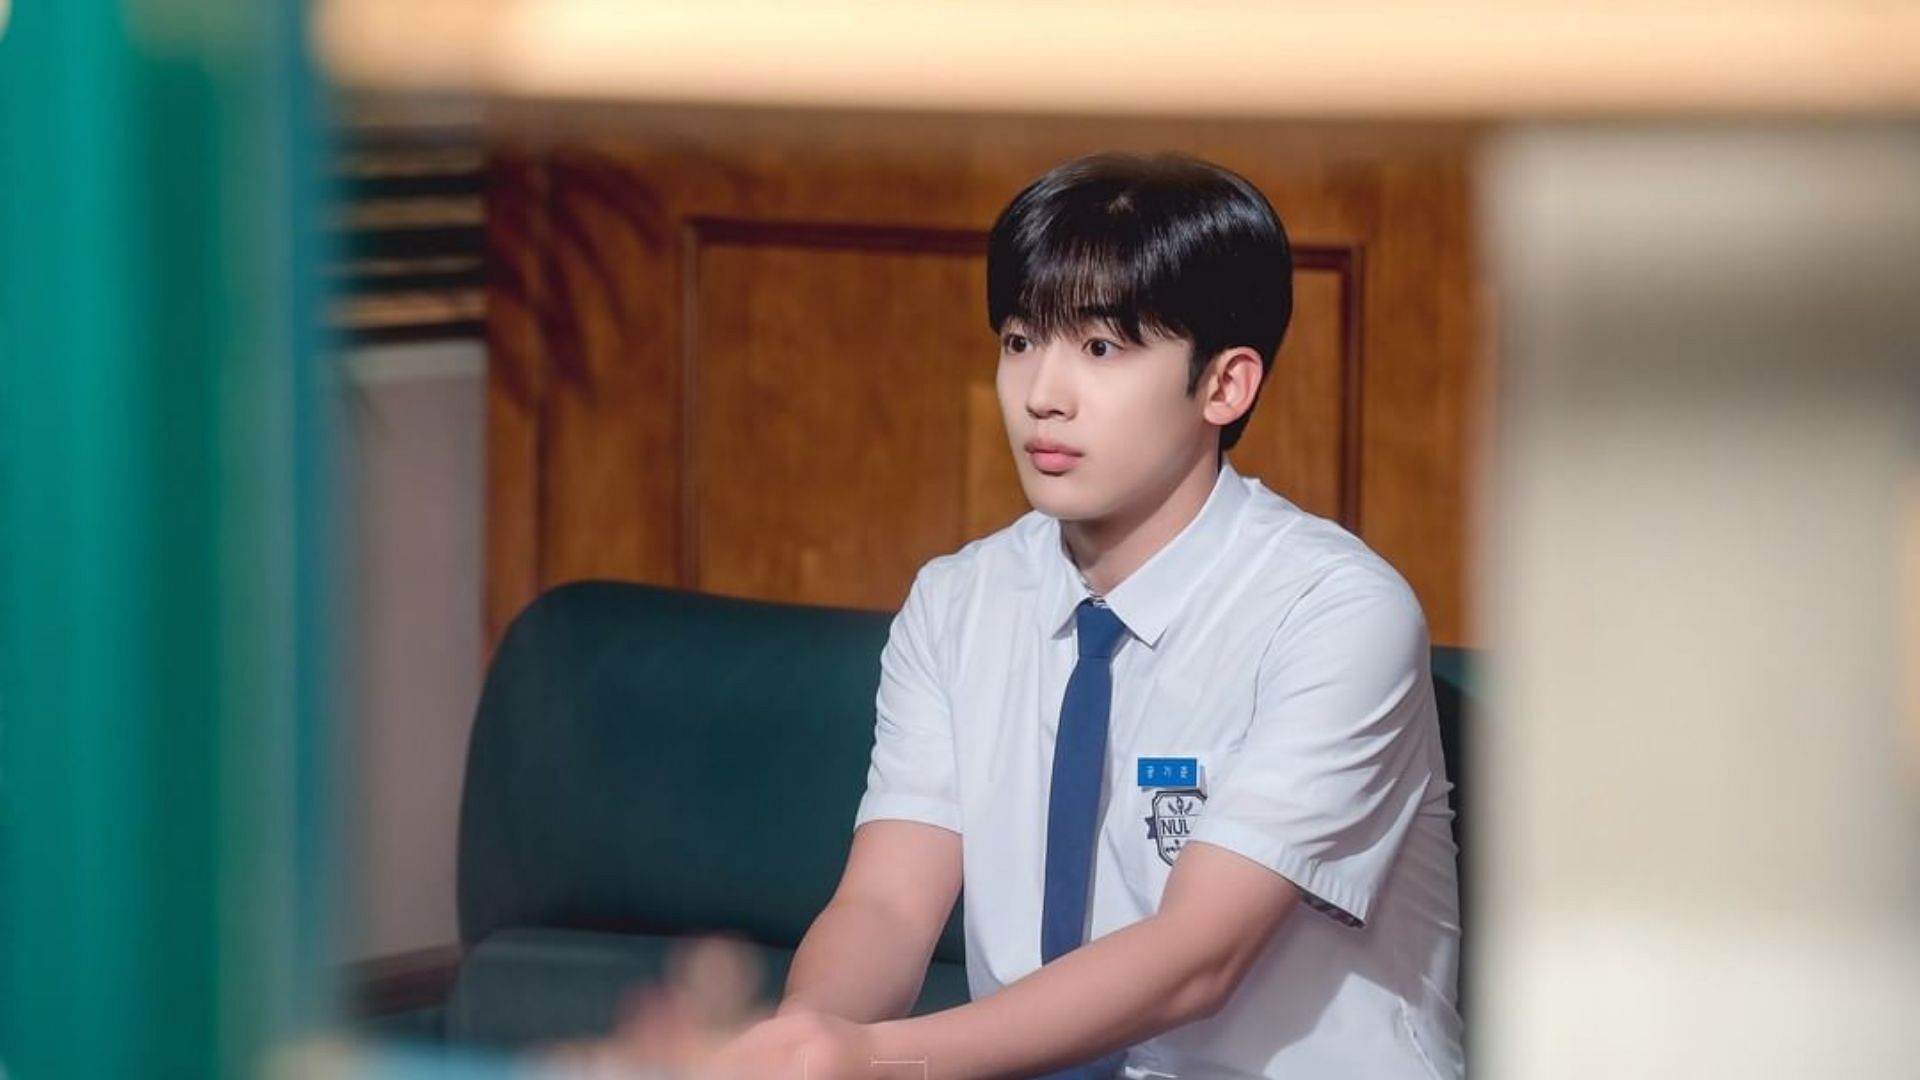 School 2021 episode 13 release date- Kim Yohan